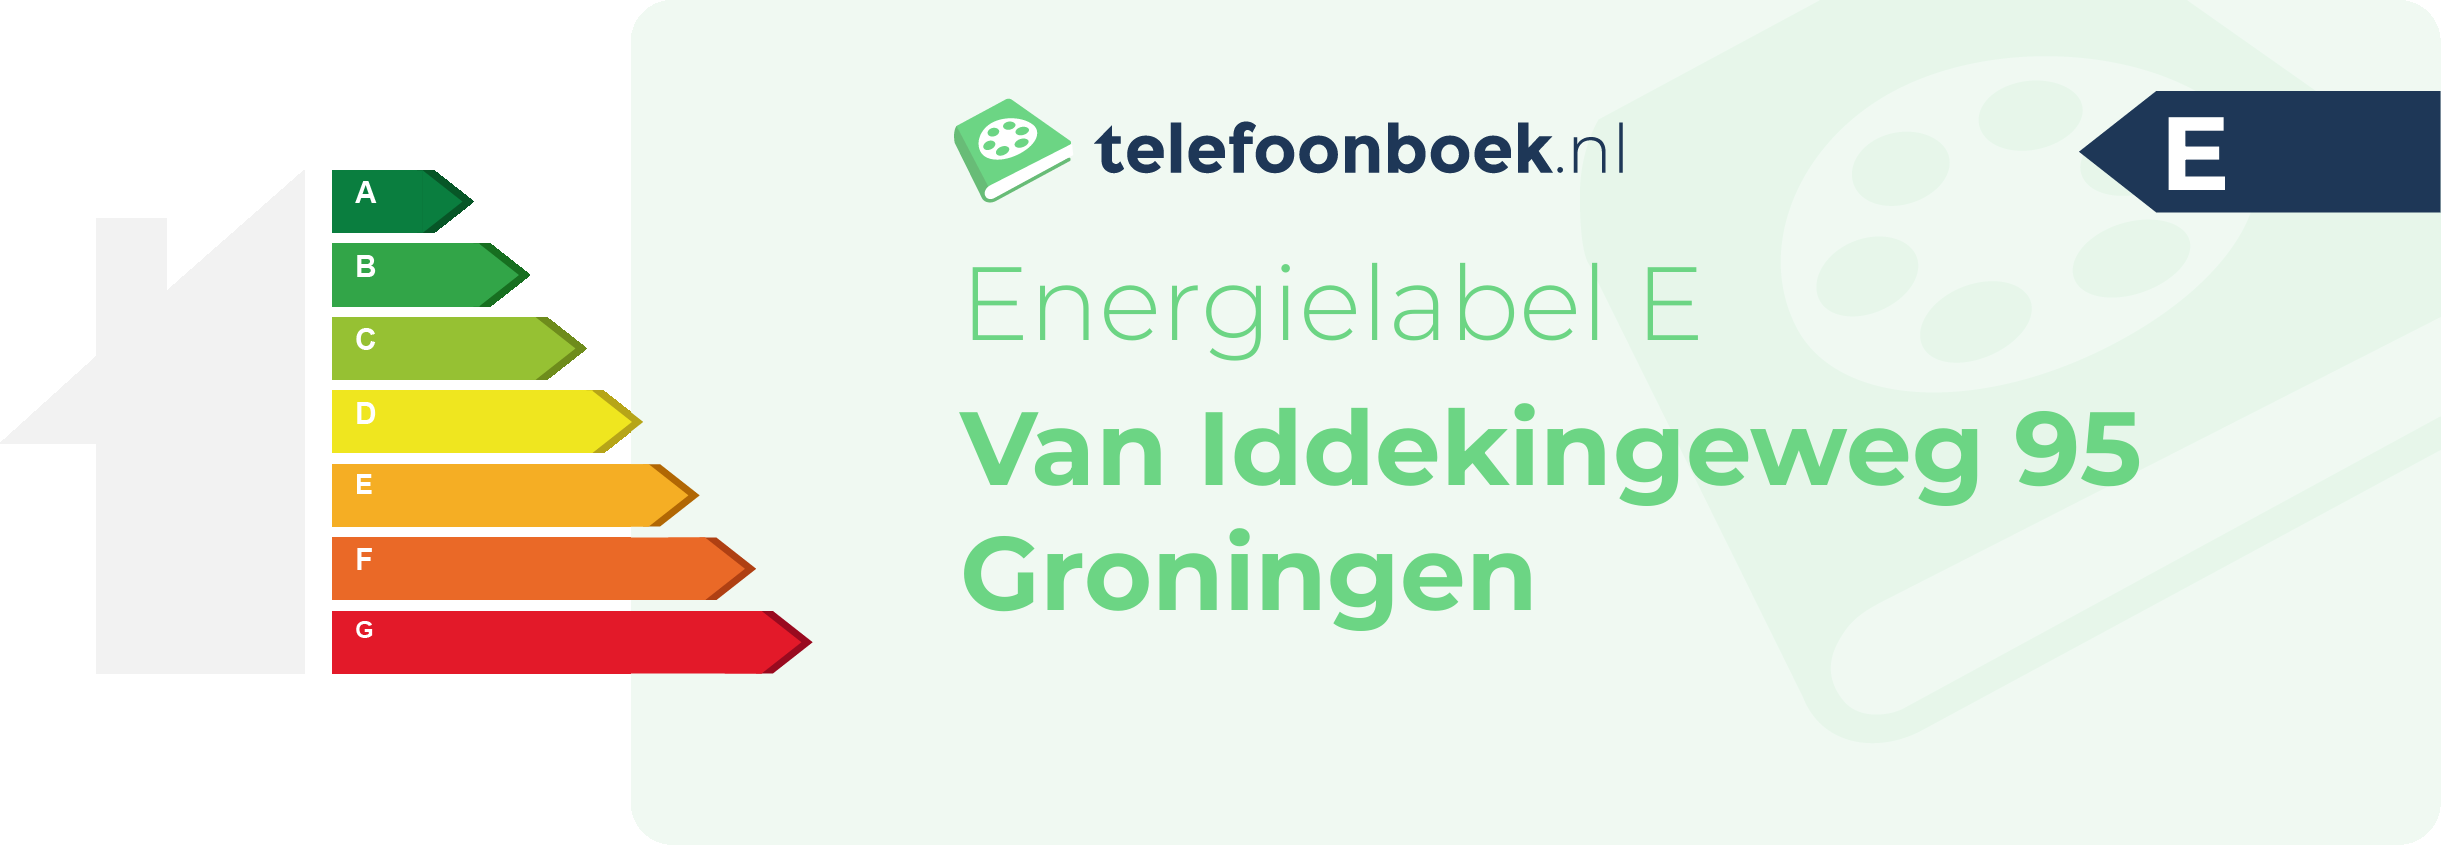 Energielabel Van Iddekingeweg 95 Groningen